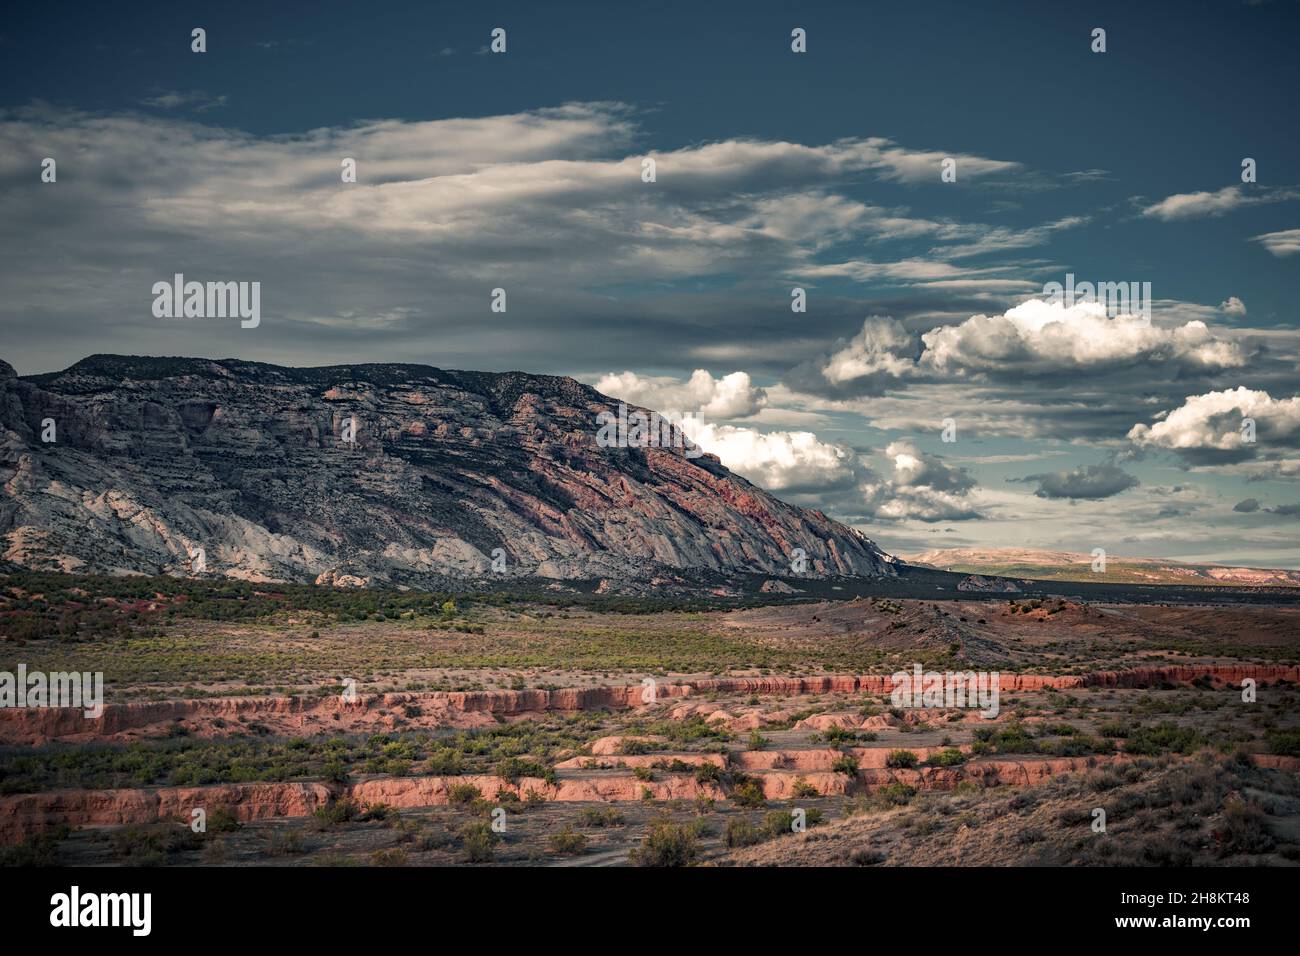 La belle vue ciel nuageux, rouge et vert canyon dans le Colorado.L'arrière-plan incroyablement coloré Banque D'Images